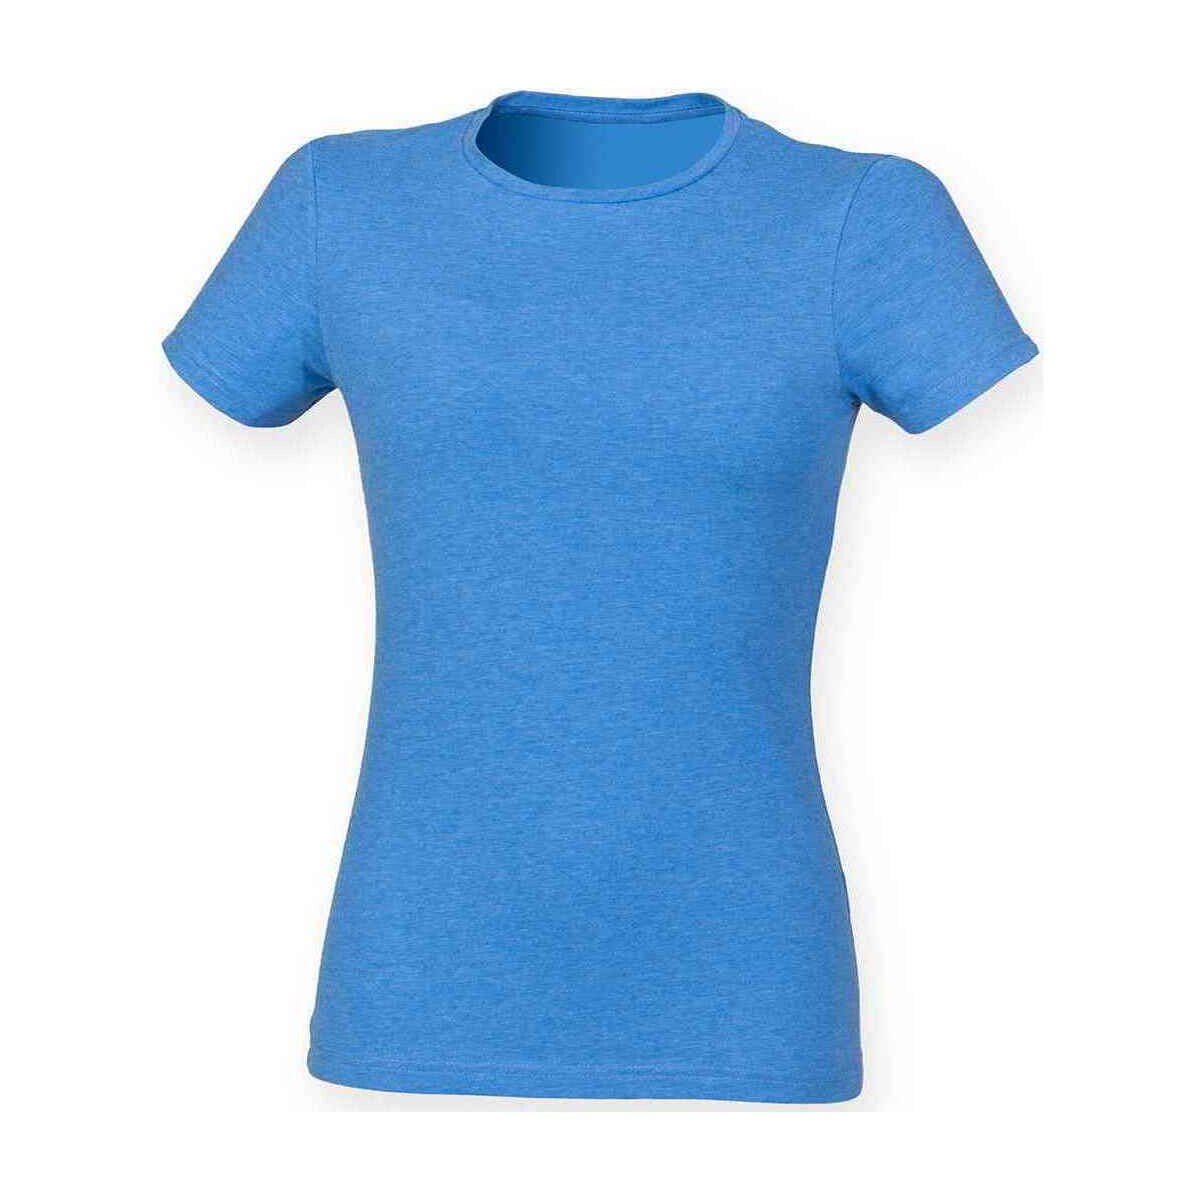 textil Mujer Camisetas manga larga Skinni Fit Feel Good Azul